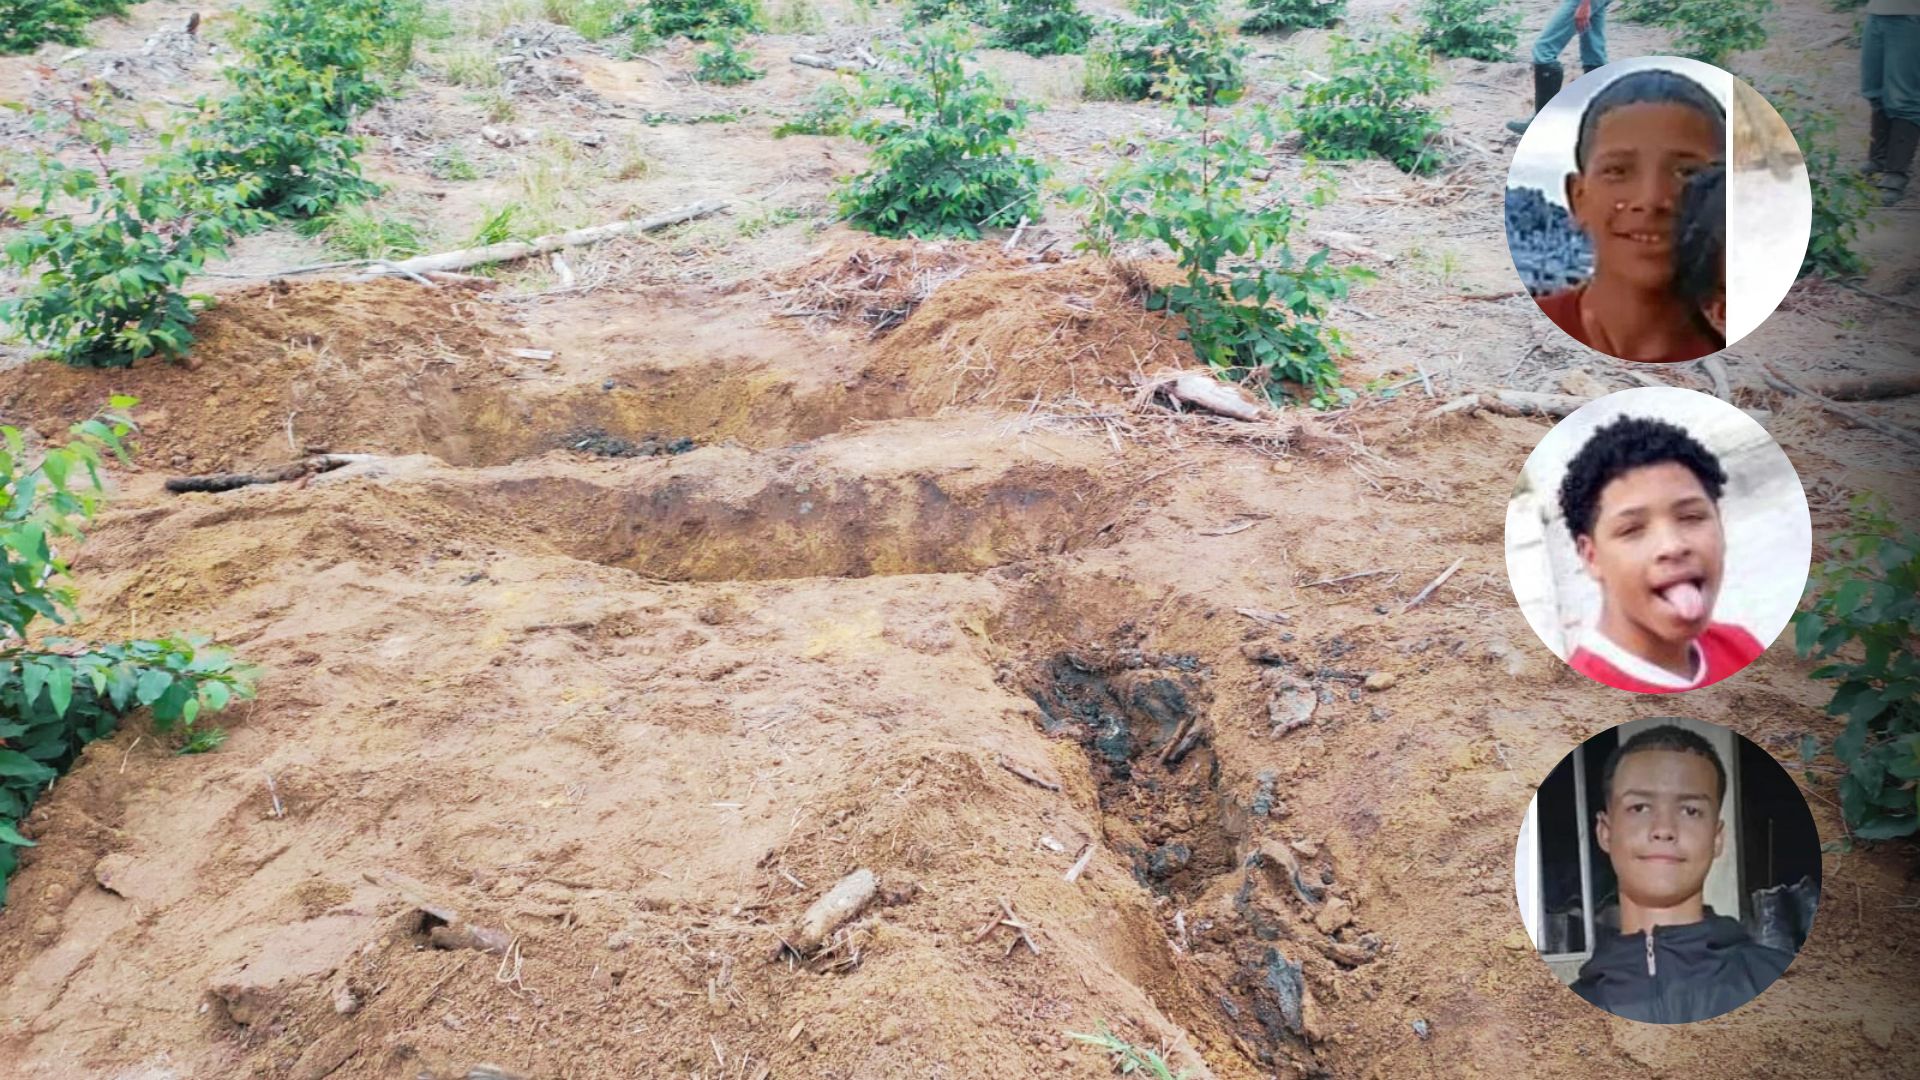 Corpos dos três adolescentes foram encontrados em covas rasas, na tarde desta sexta-feira (1), em uma área de plantação de eucalipto